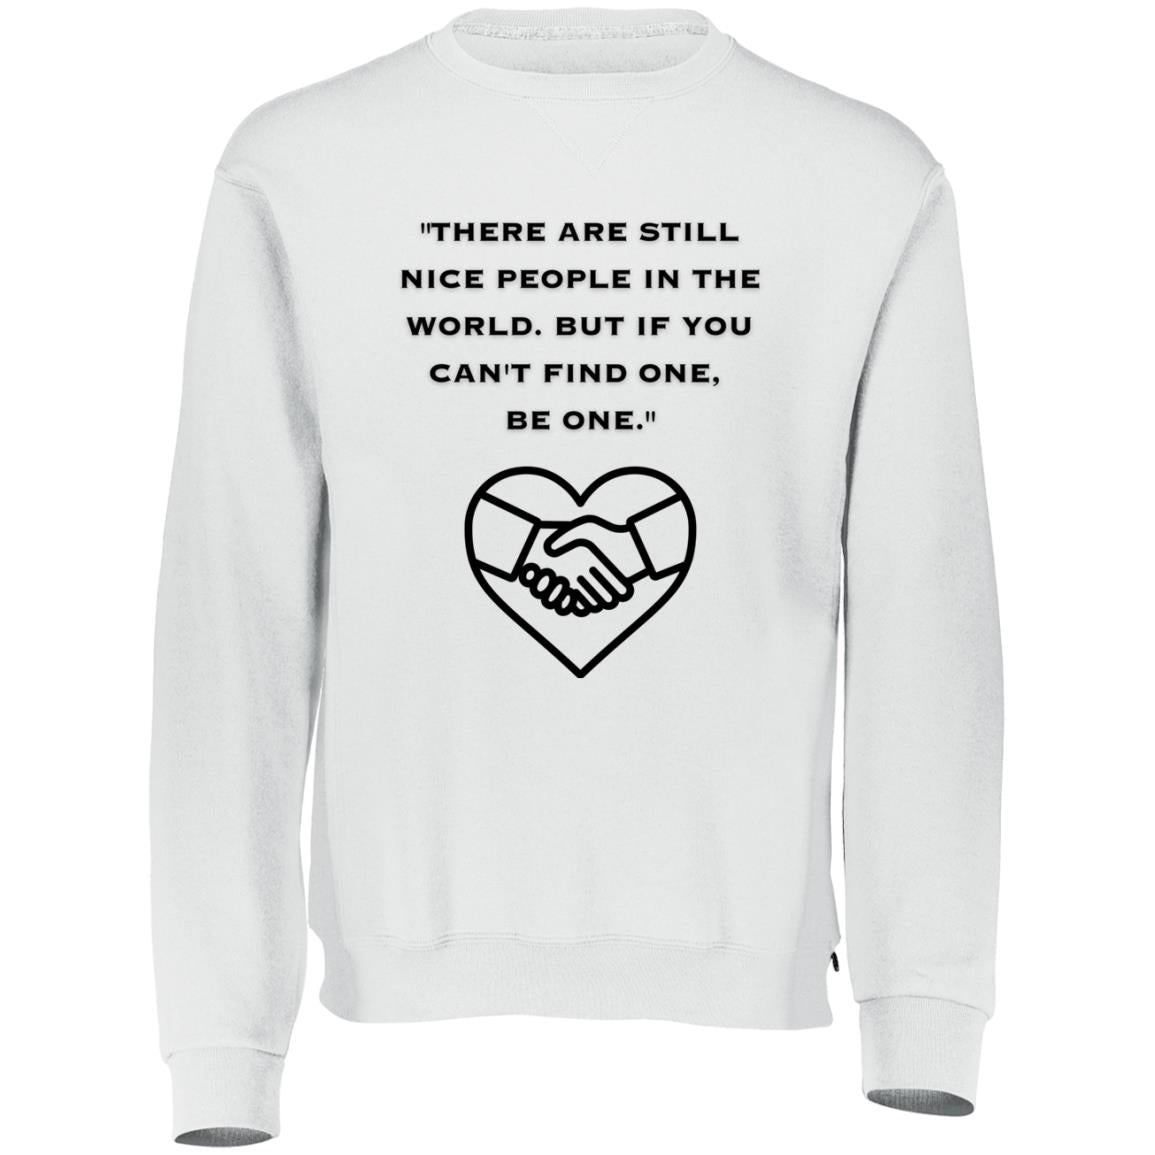 Sweatshirt| For Him| Her| Dad| Mom| Sister| Brother|Boyfriend|Girlfriend| Best Friend